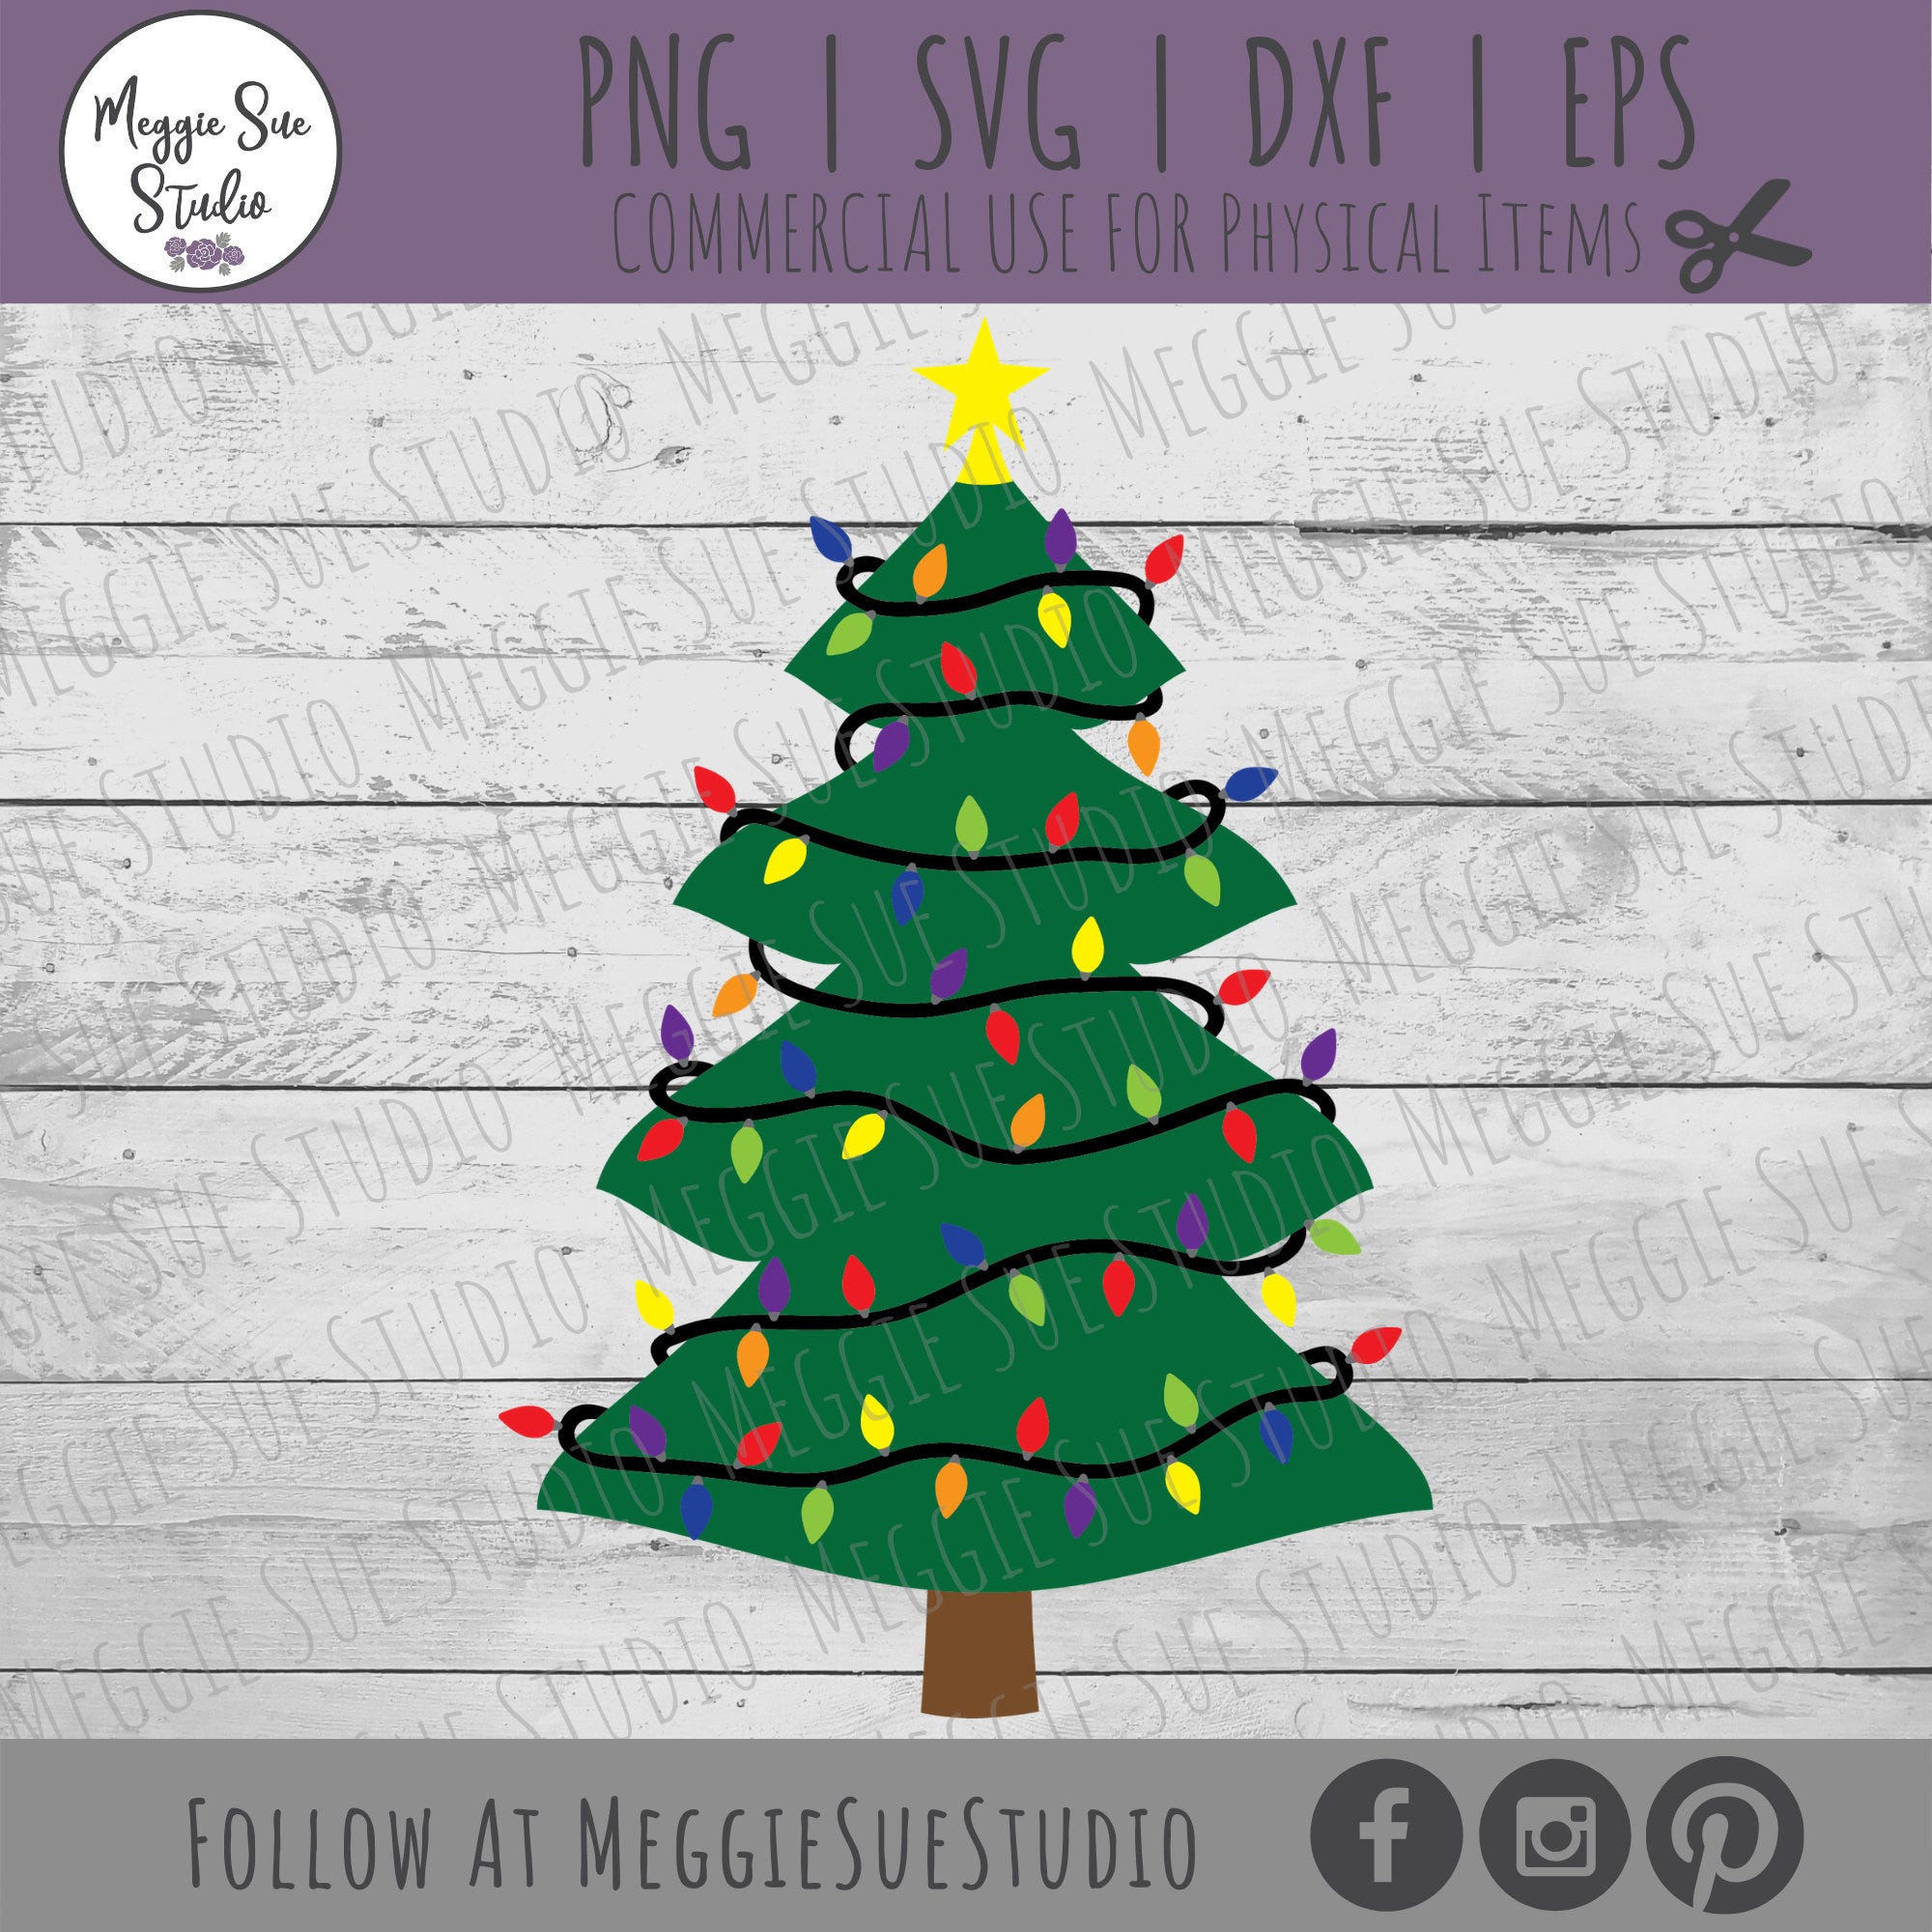 Christmas Tree SVG, Christmas Tree Lights SVG, Christmas Tree With Star And Lights SVG, Christmas Tree Cut File, Christmas Tree Decor